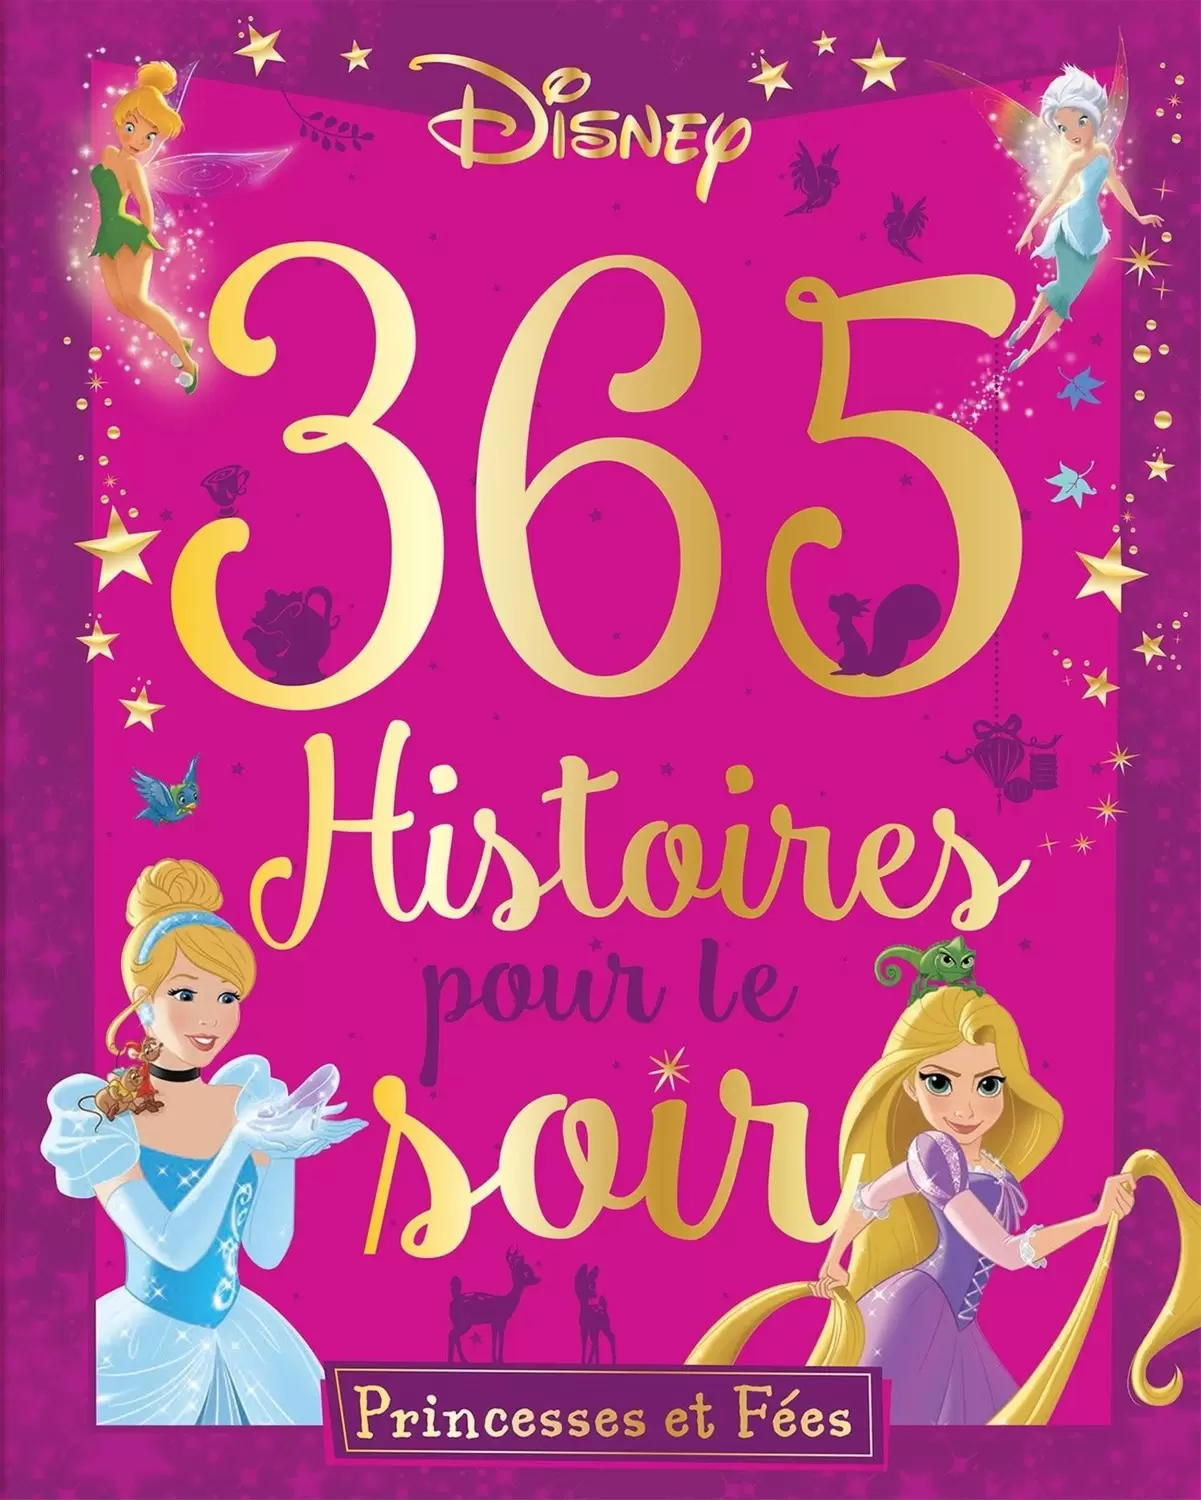 Disney - Histoires pour le soir et pour la semaine - 365 Histoires pour le soir - Princesses et fées